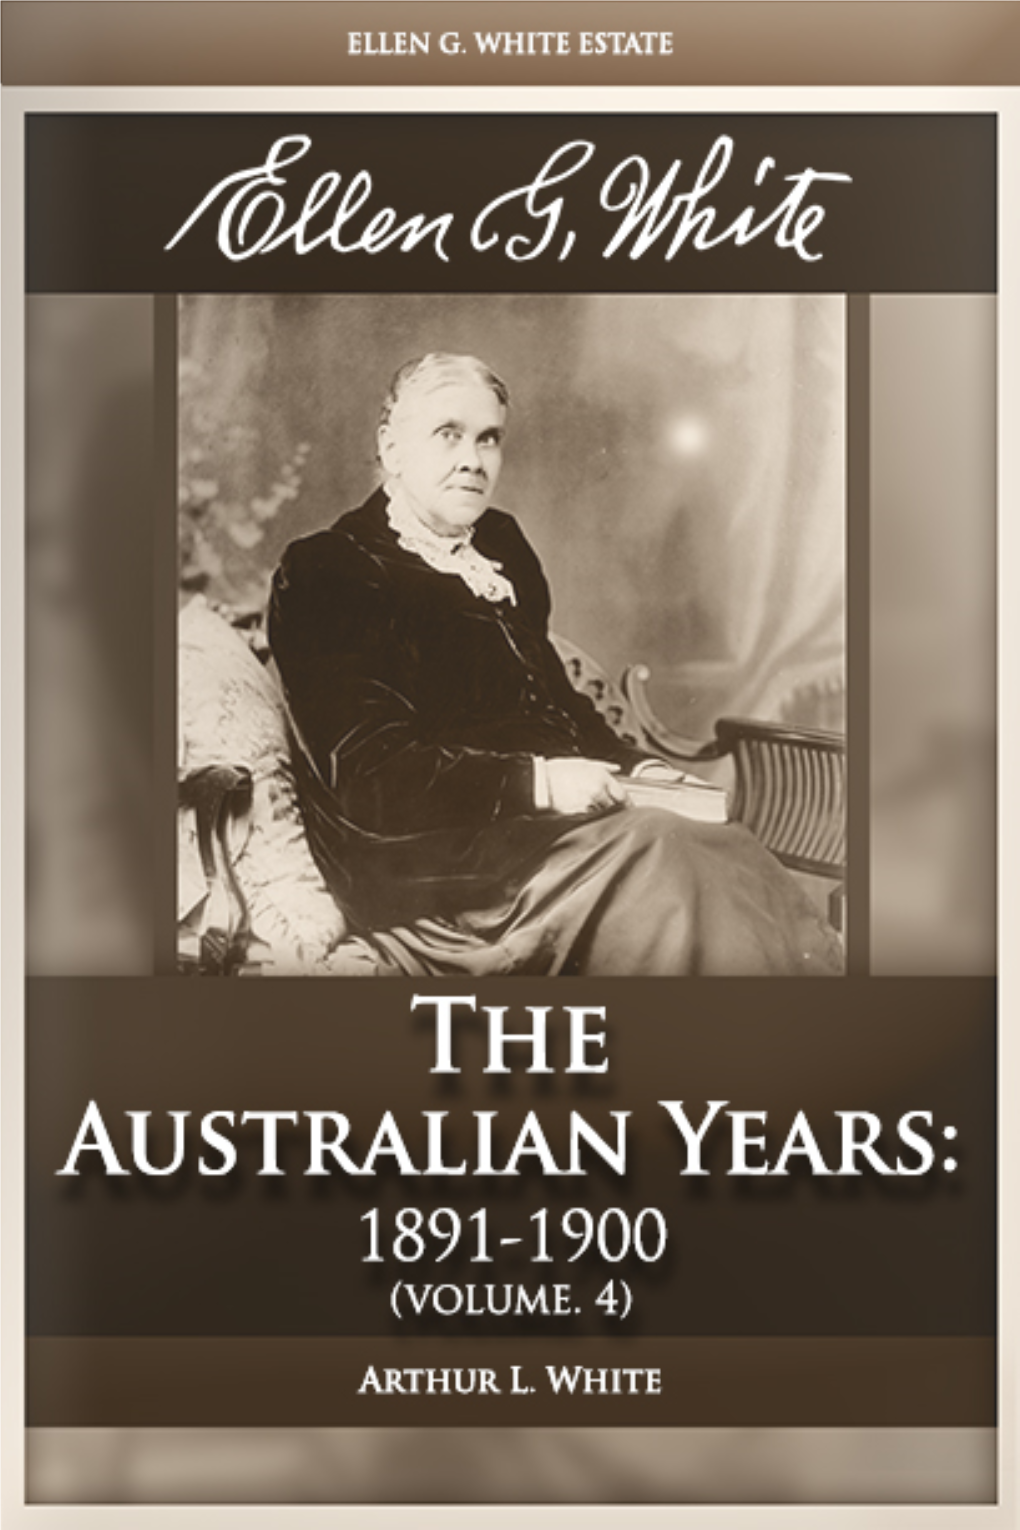 Ellen G. White: Volume 4—The Australian Years: 1891-1900